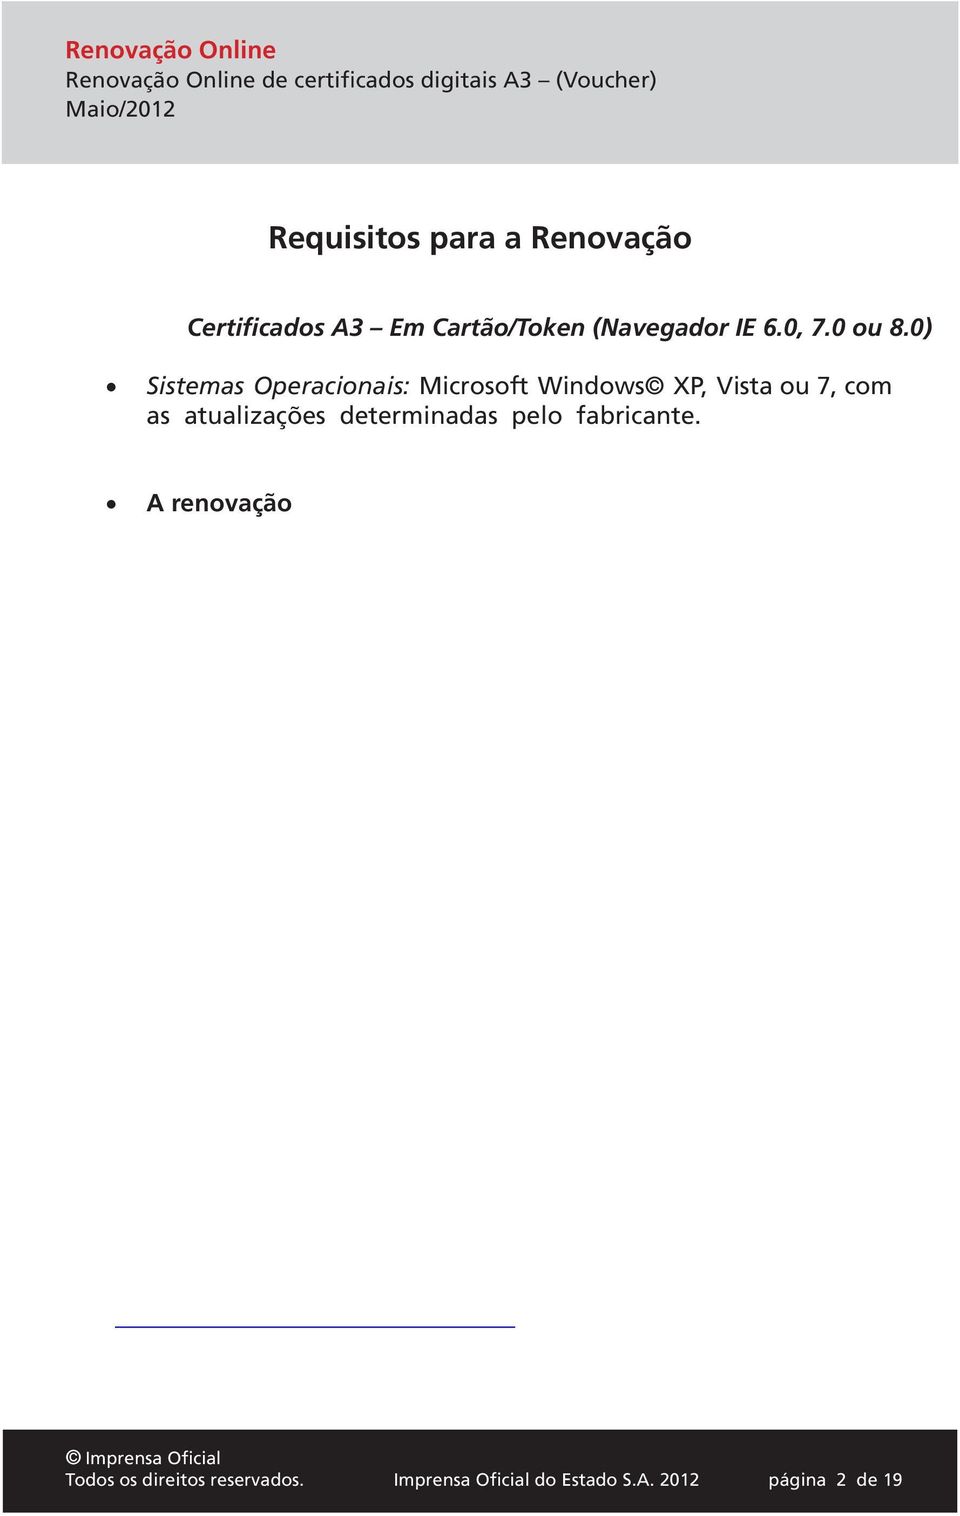 Verifique esta condição antes Para a renovação do certificado, faz-se necessário que os drives da leitora e/ou do token estejam instalados no computador que será realizada a renovação.